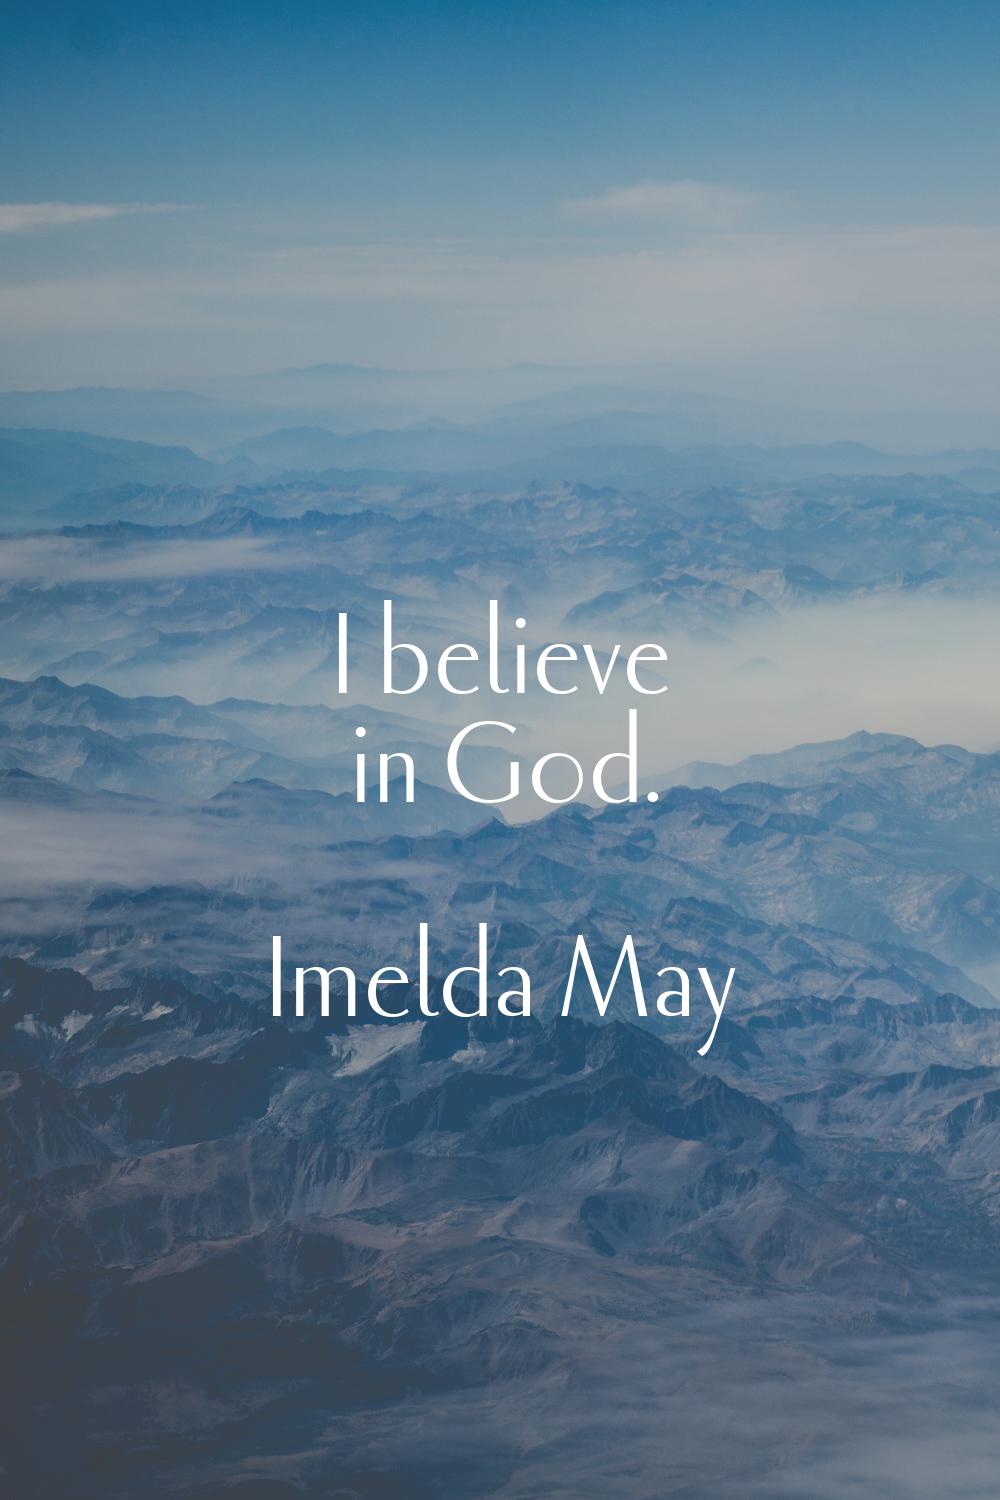 I believe in God.